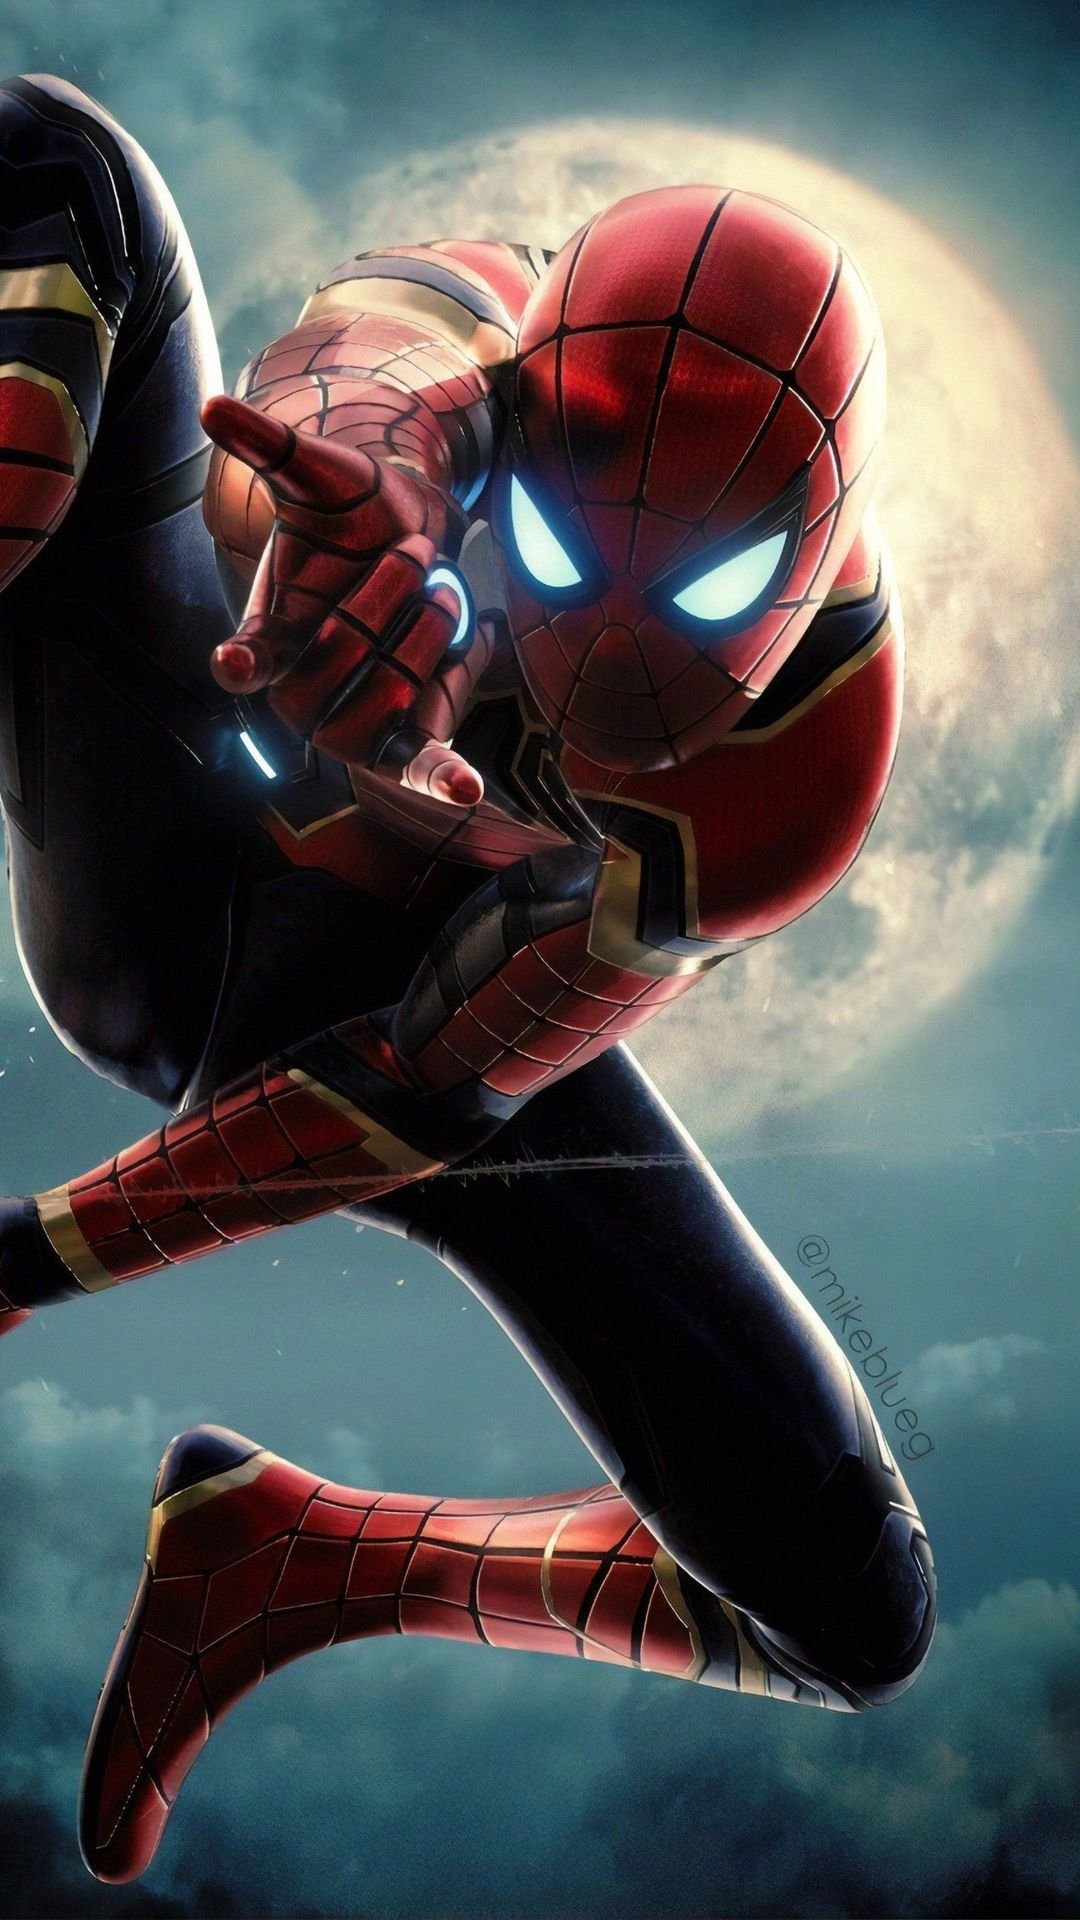 4K Toby Mcguire Spiderman Wallpaper